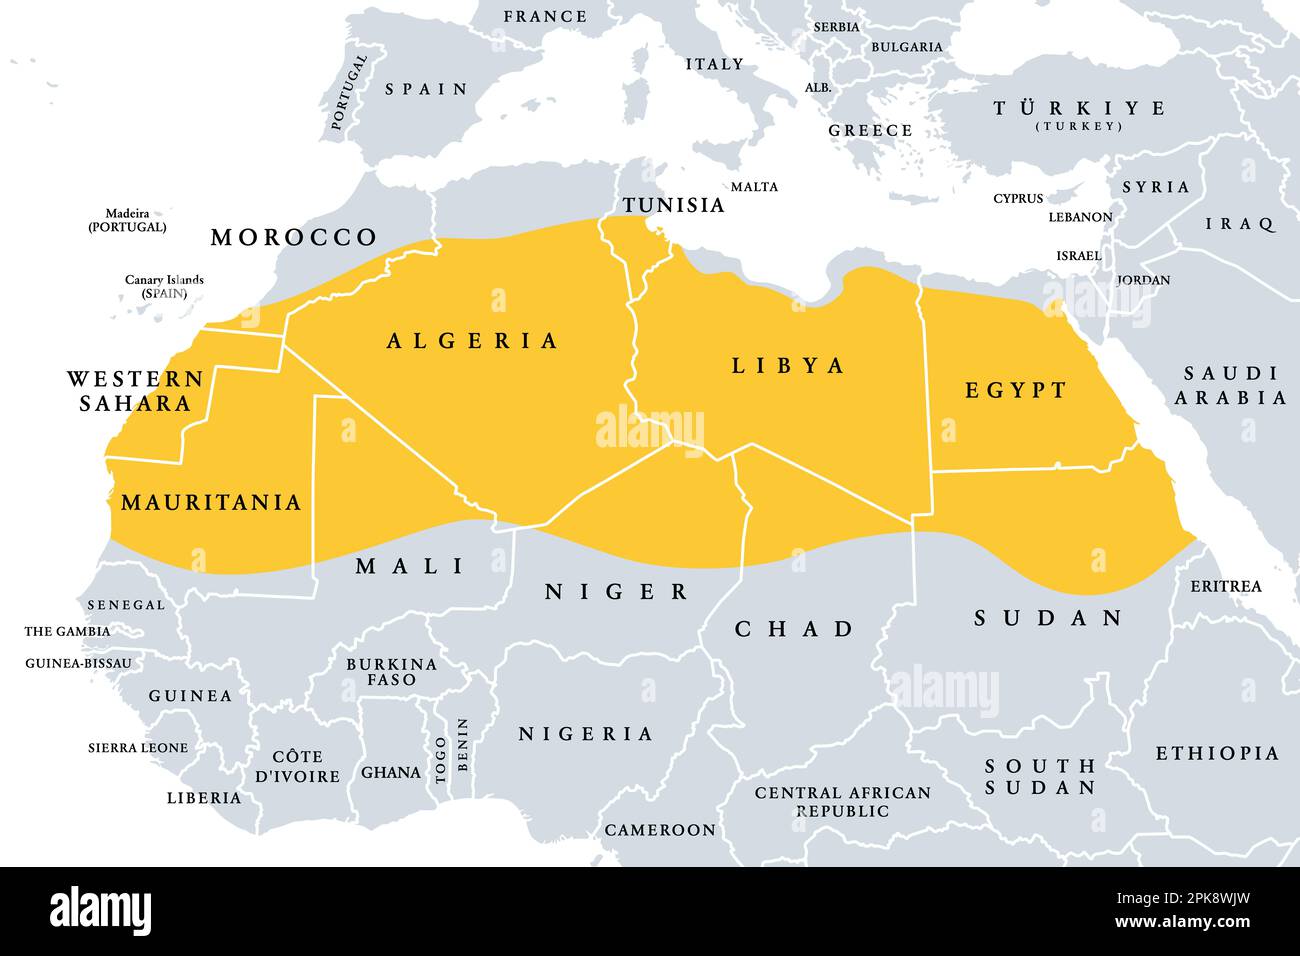 El Sahara, desierto en el continente africano, mapa político. El desierto caliente más grande del mundo, que constituye la mayor parte del norte de África. Foto de stock